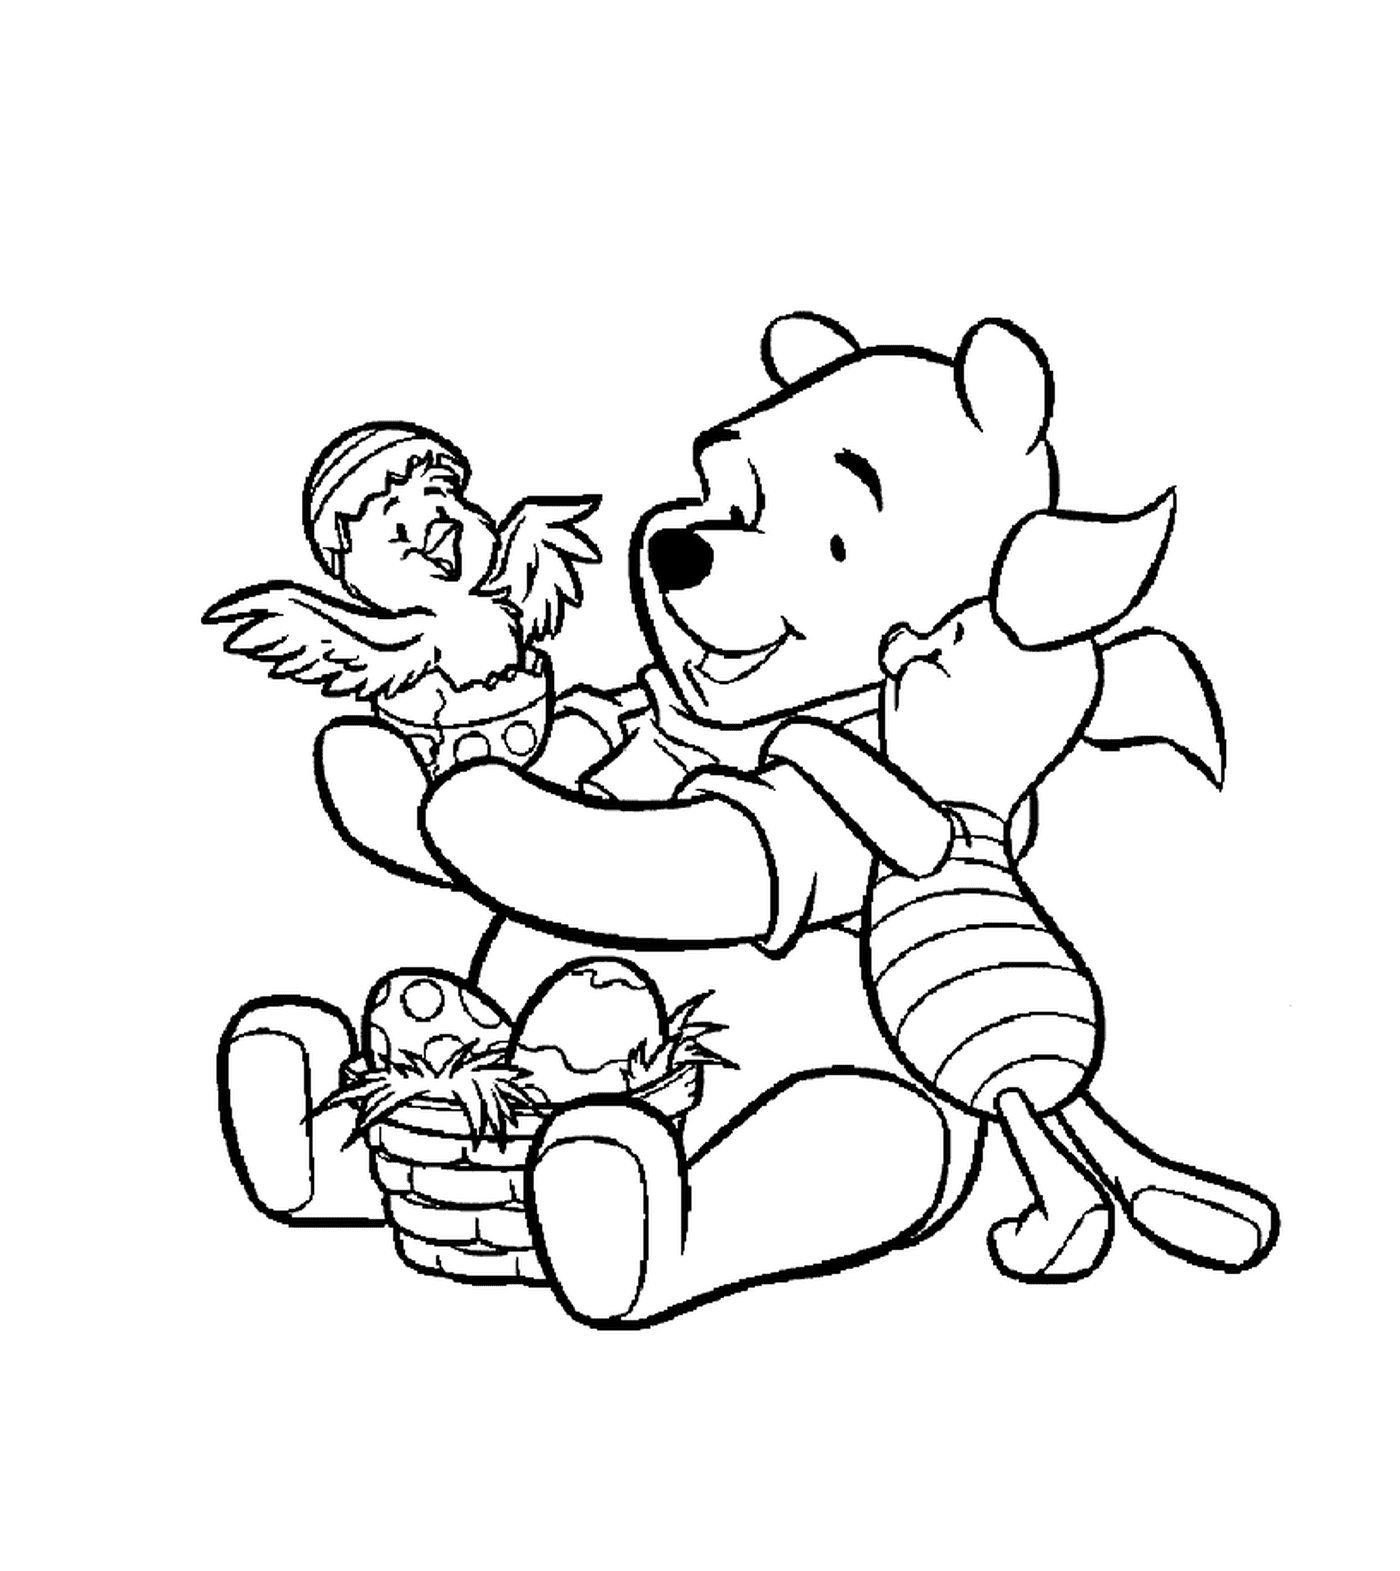  Winnie o urso e seus amigos 